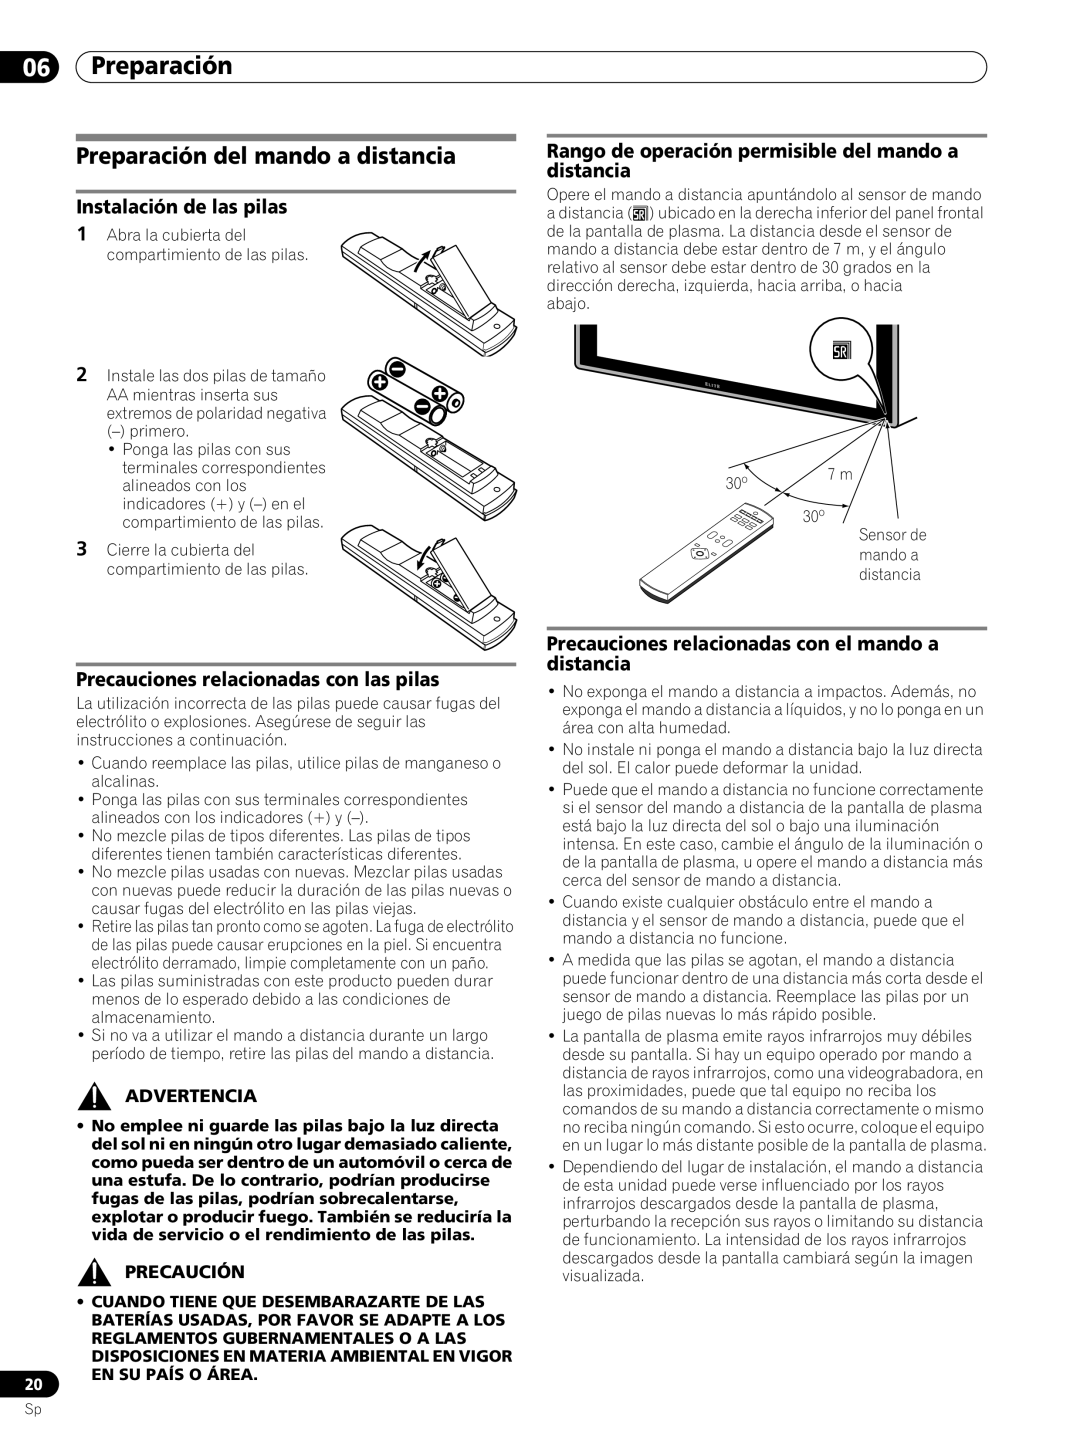 Pioneer PRO-FHD1 Preparación del mando a distancia, Instalación de las pilas, Precauciones relacionadas con las pilas 